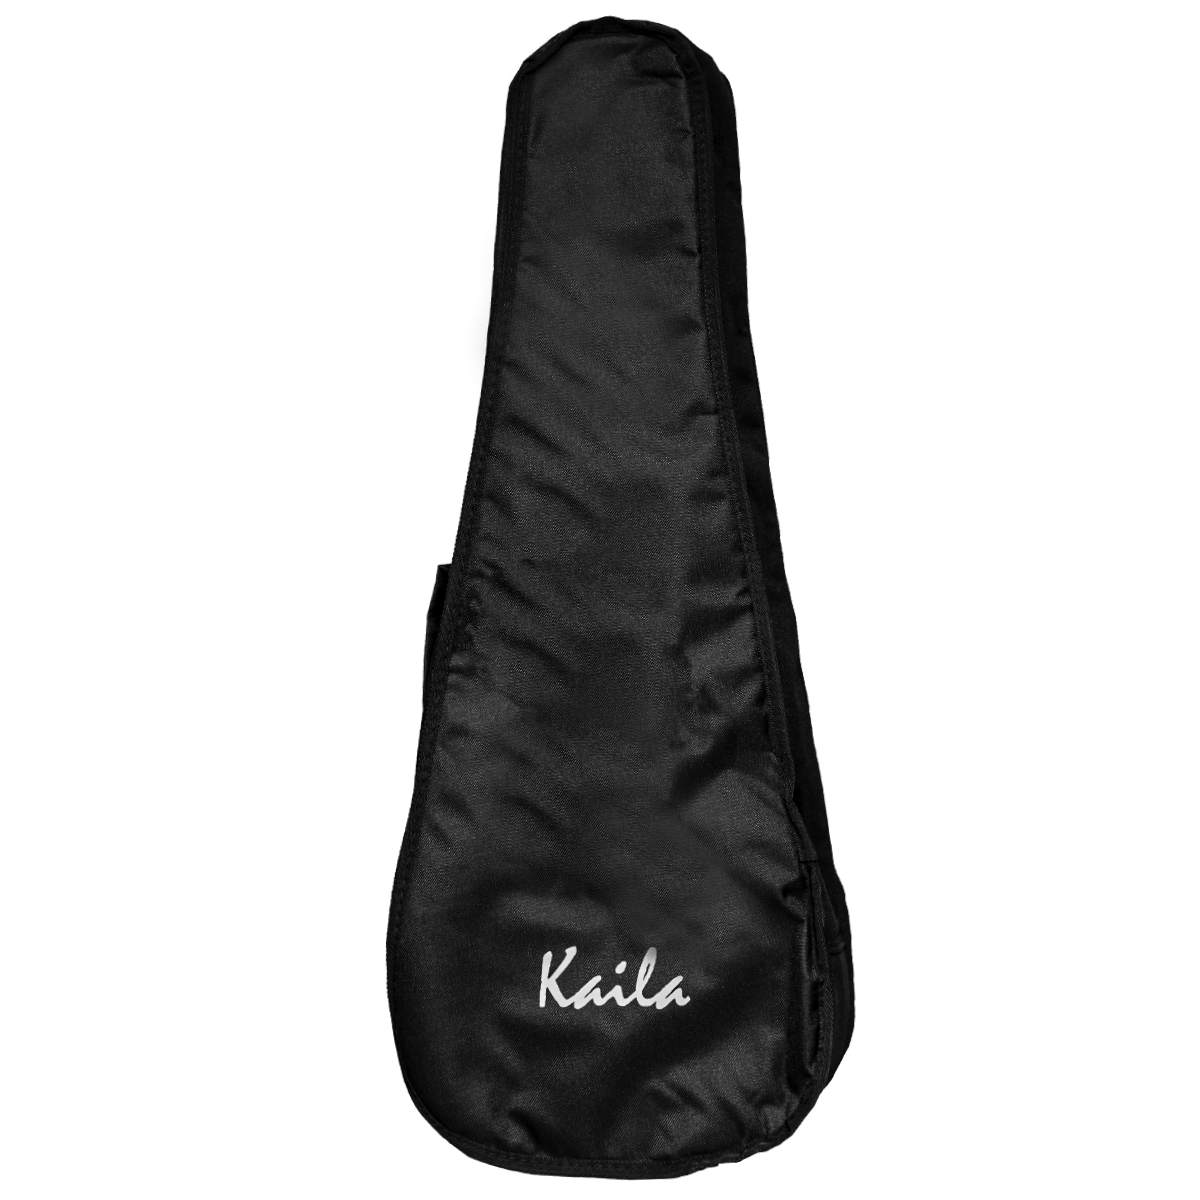 Kaila UKSGB02: Ukulele Soprano 21" Gig Bag (With 5 mm Padding)